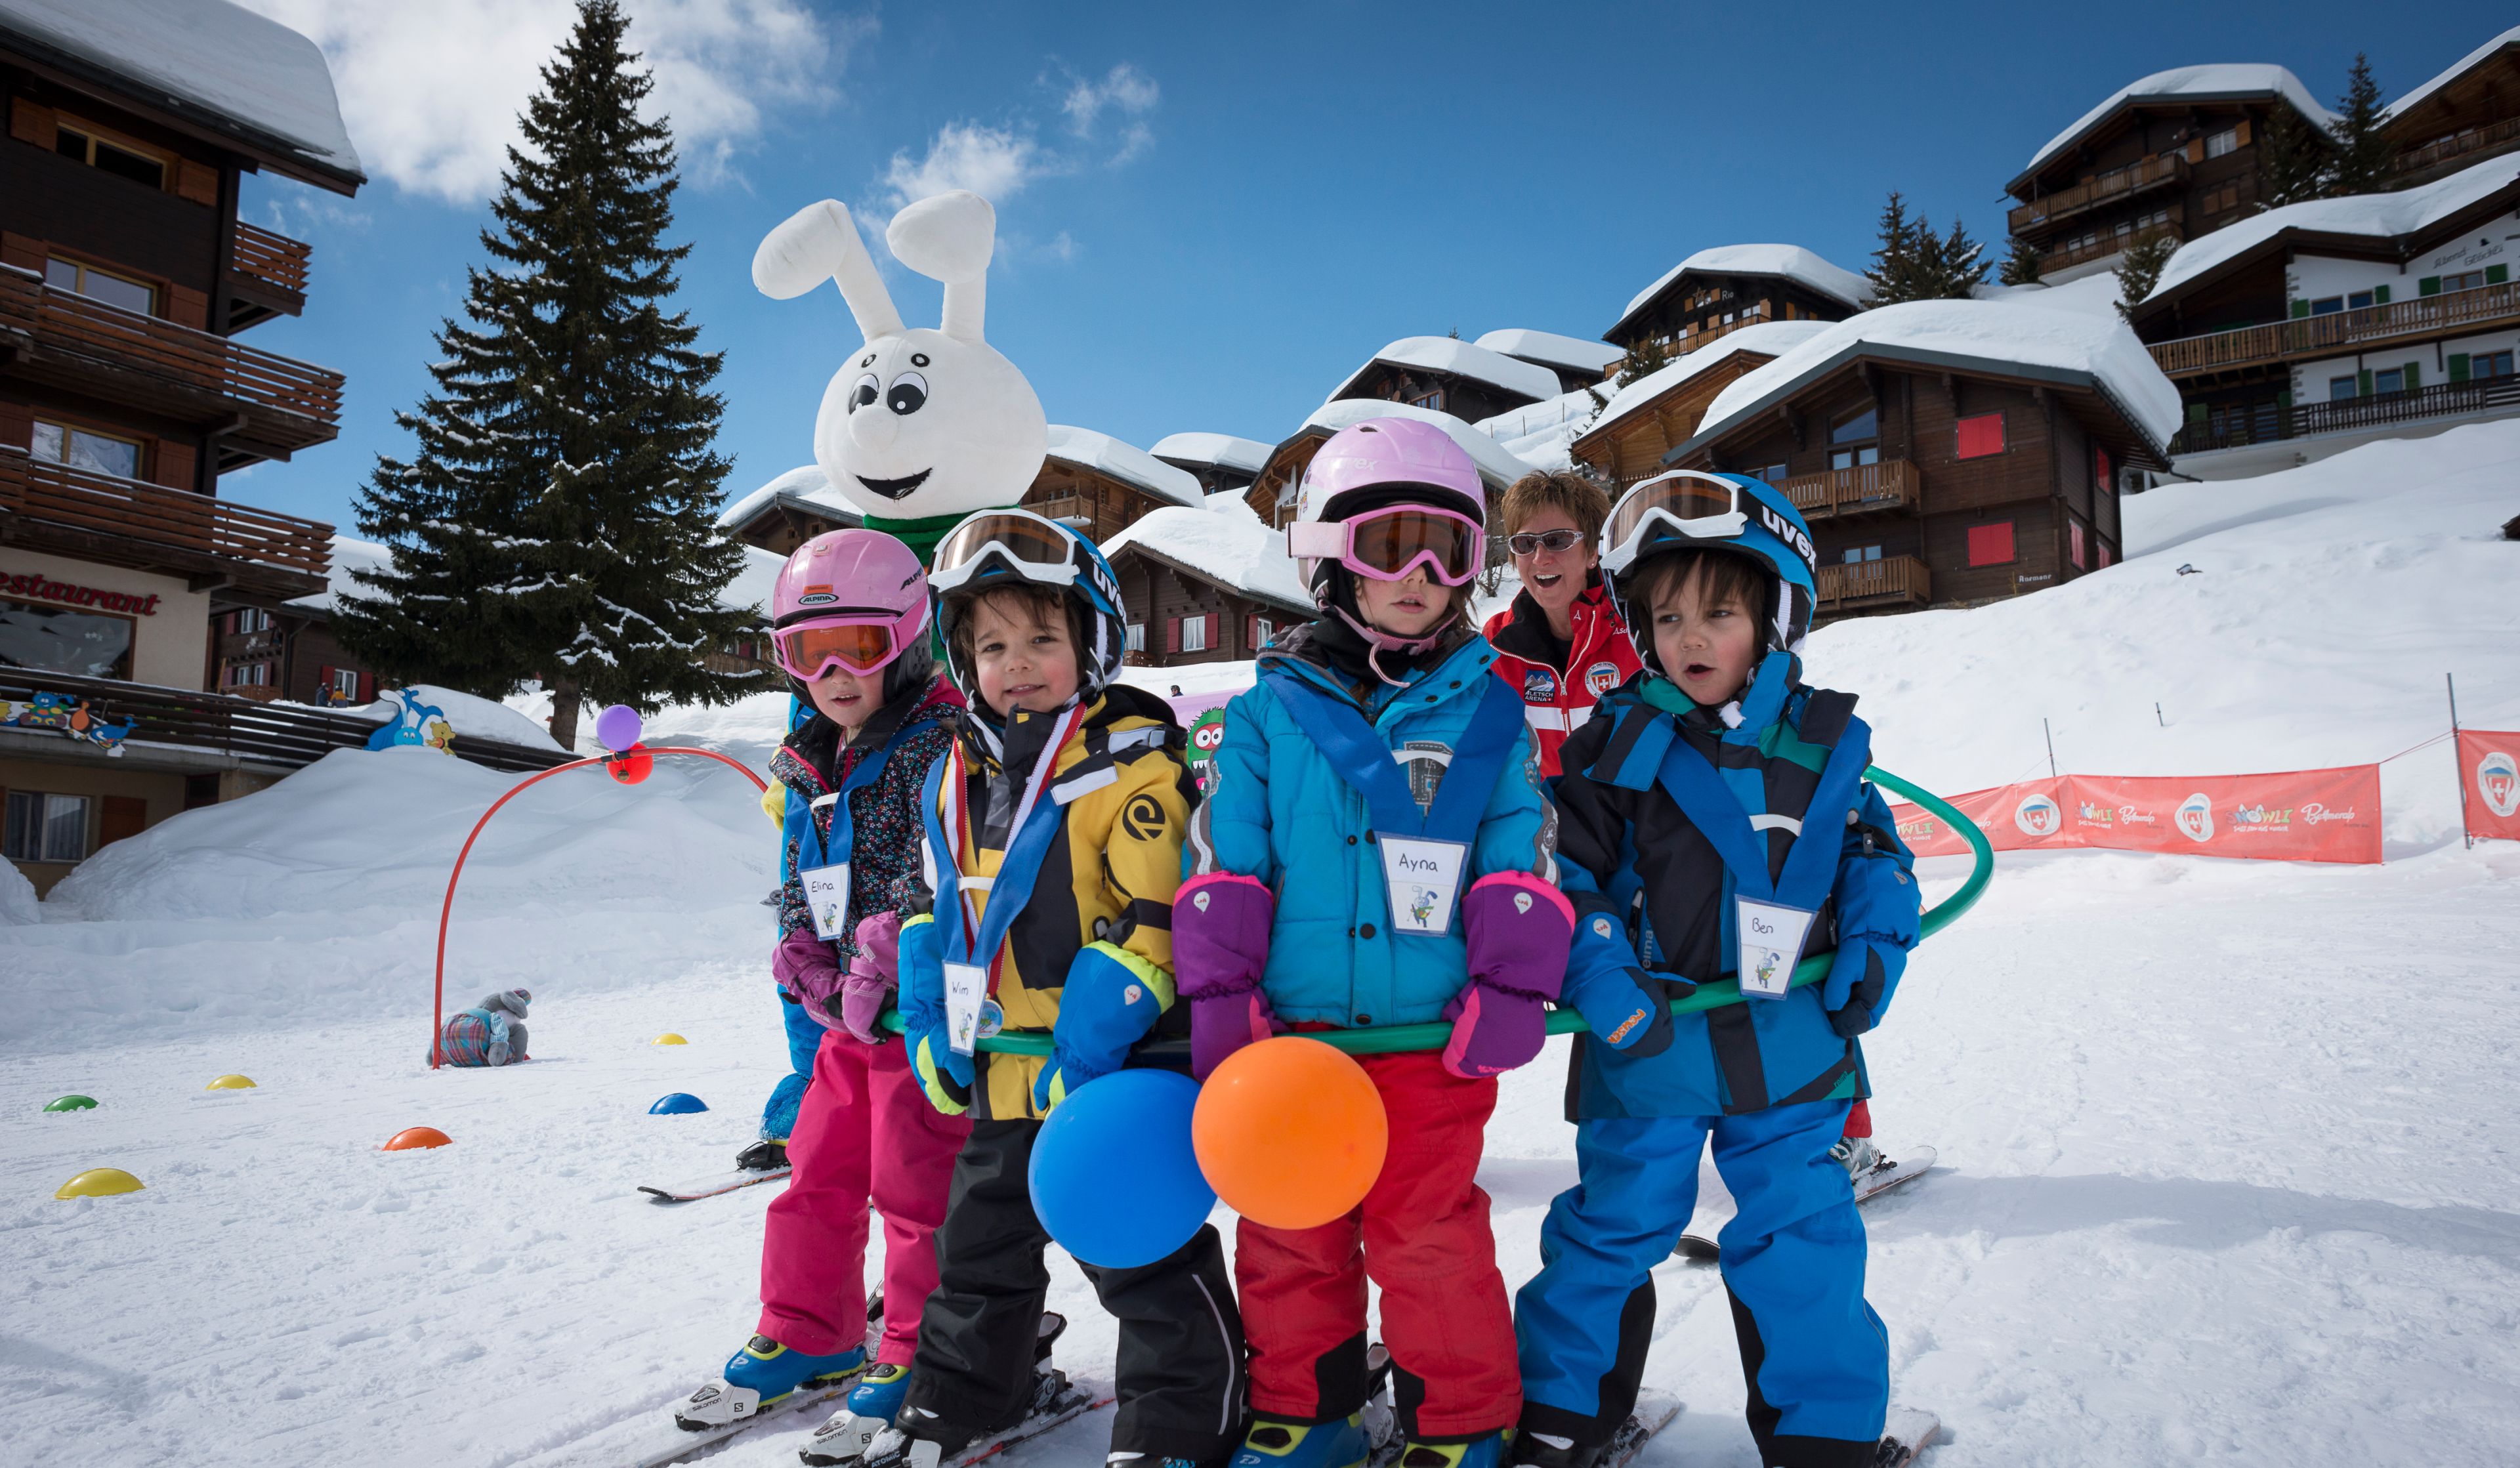 Gruppenfoto der Skilehrlinge im Kinderschneeländer auf der Bettmeralp mit dem Maskottchen